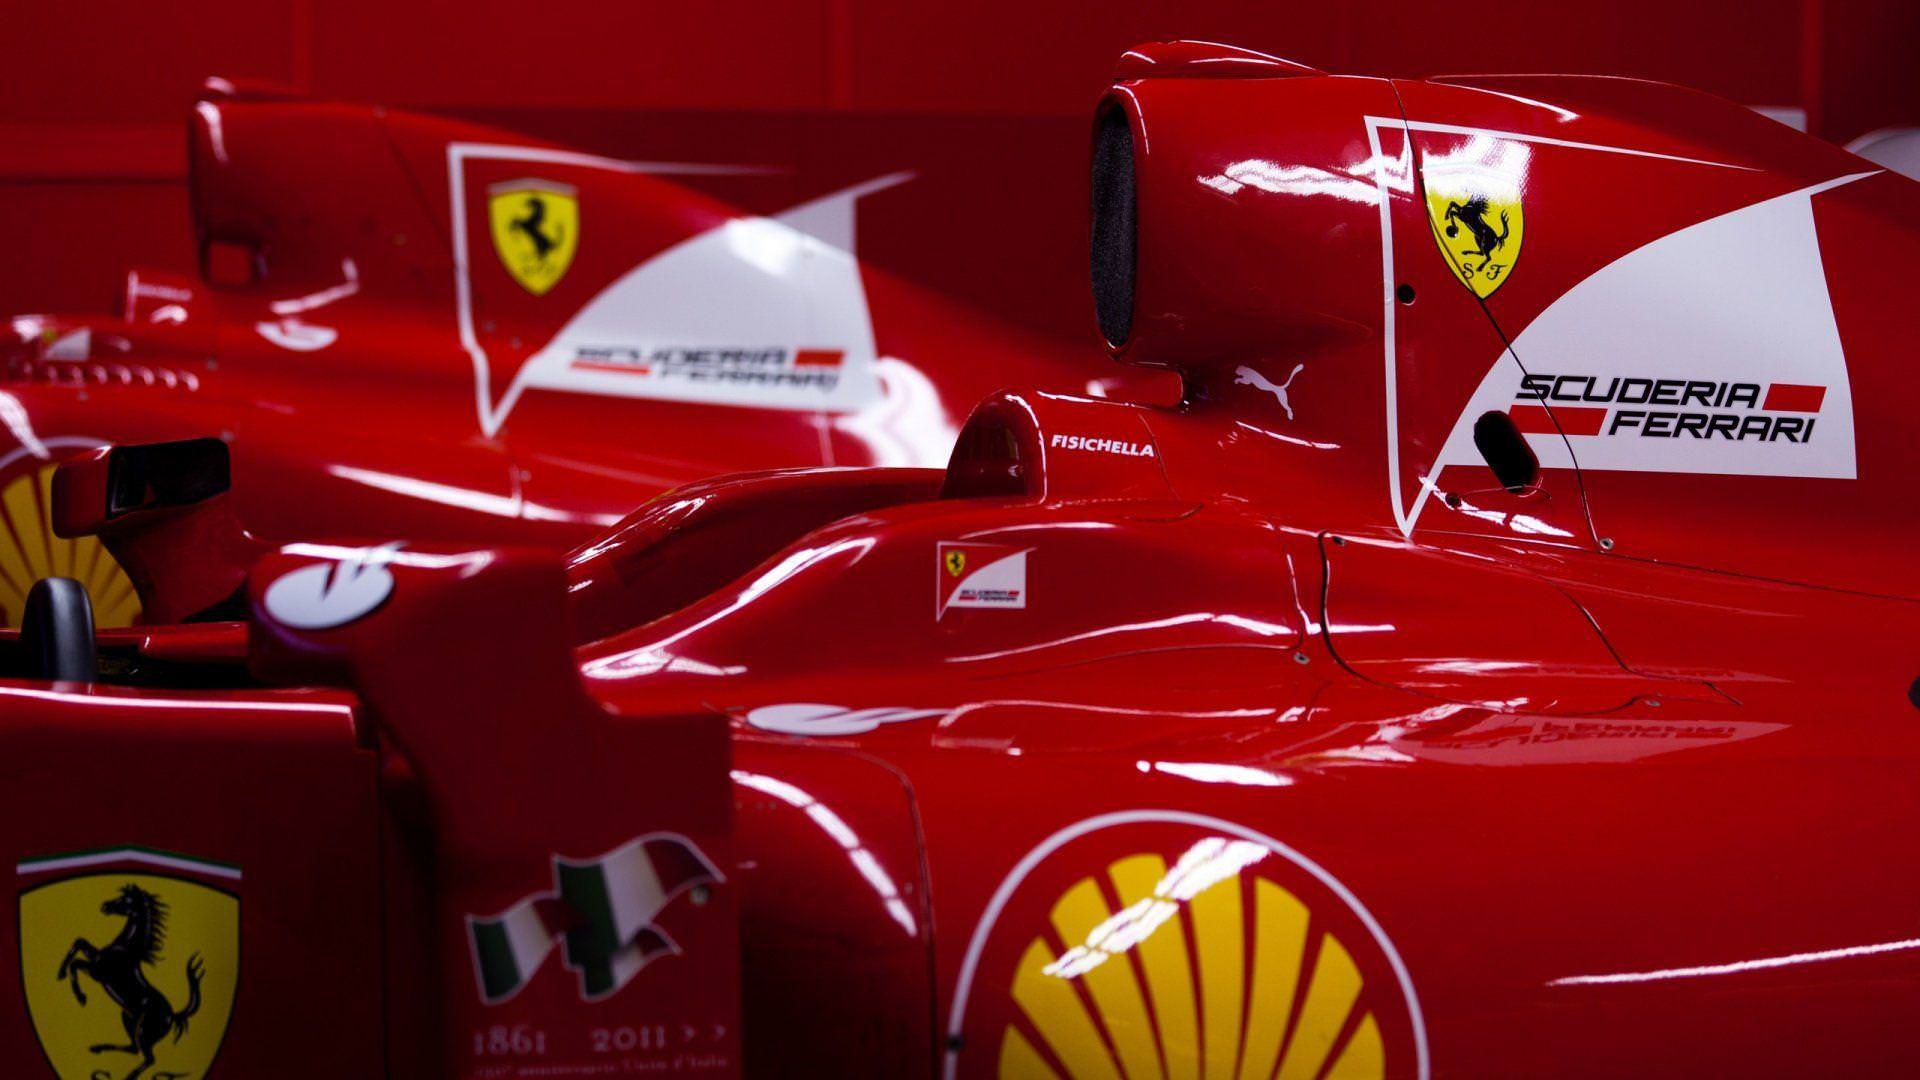 Wallpaper wallpaper sport logo Formula 1 Scuderia Ferrari images for  desktop section спорт  download